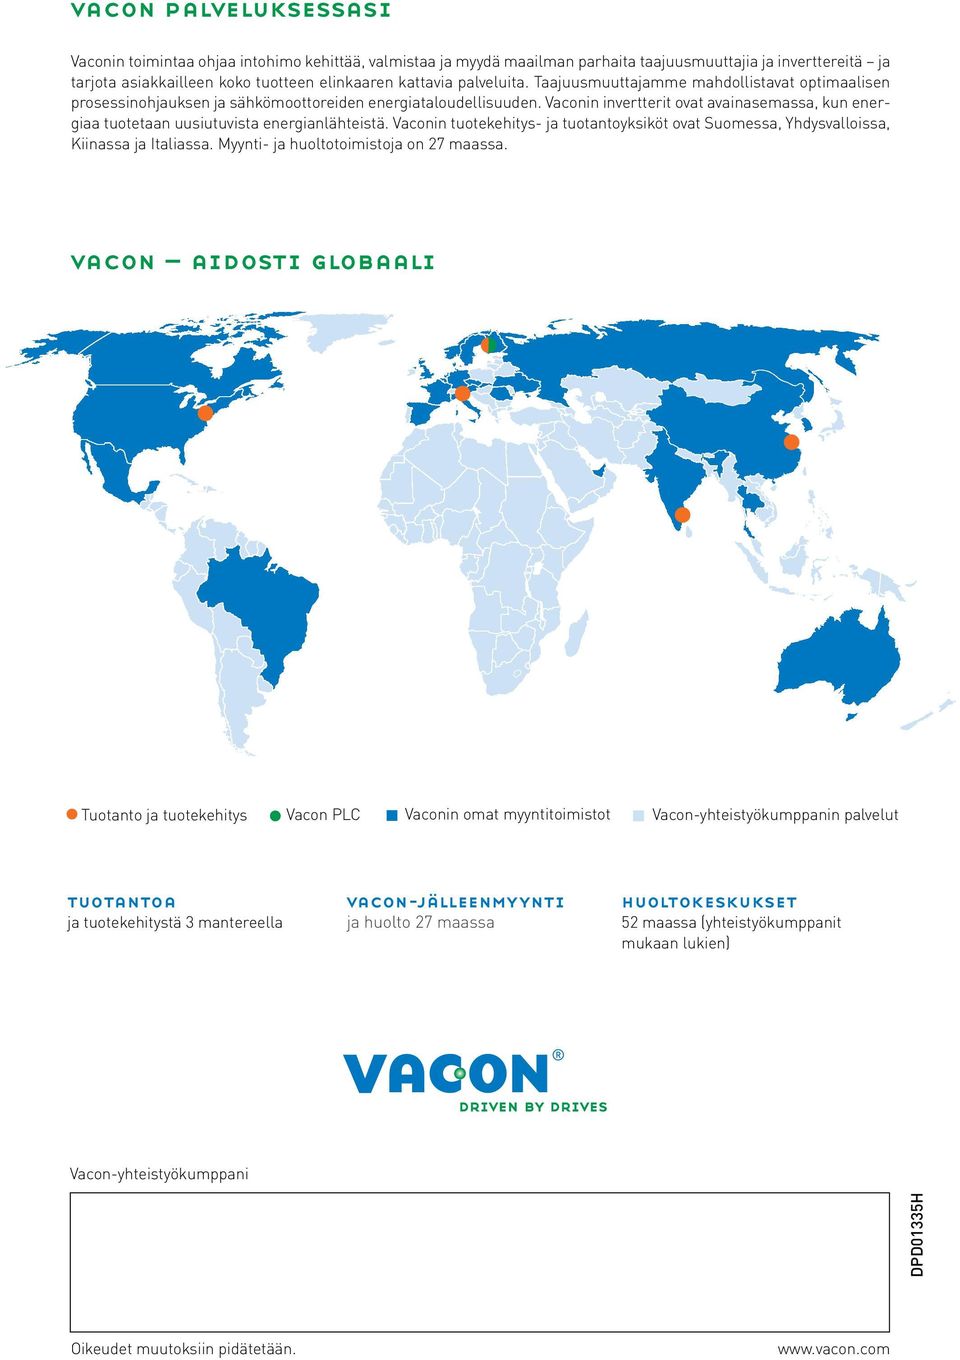 Vaconin invertterit ovat avainasemassa, kun energiaa tuotetaan uusiutuvista energianlähteistä. Vaconin tuotekehitys- ja tuotantoyksiköt ovat Suomessa, Yhdysvalloissa, Kiinassa ja Italiassa.